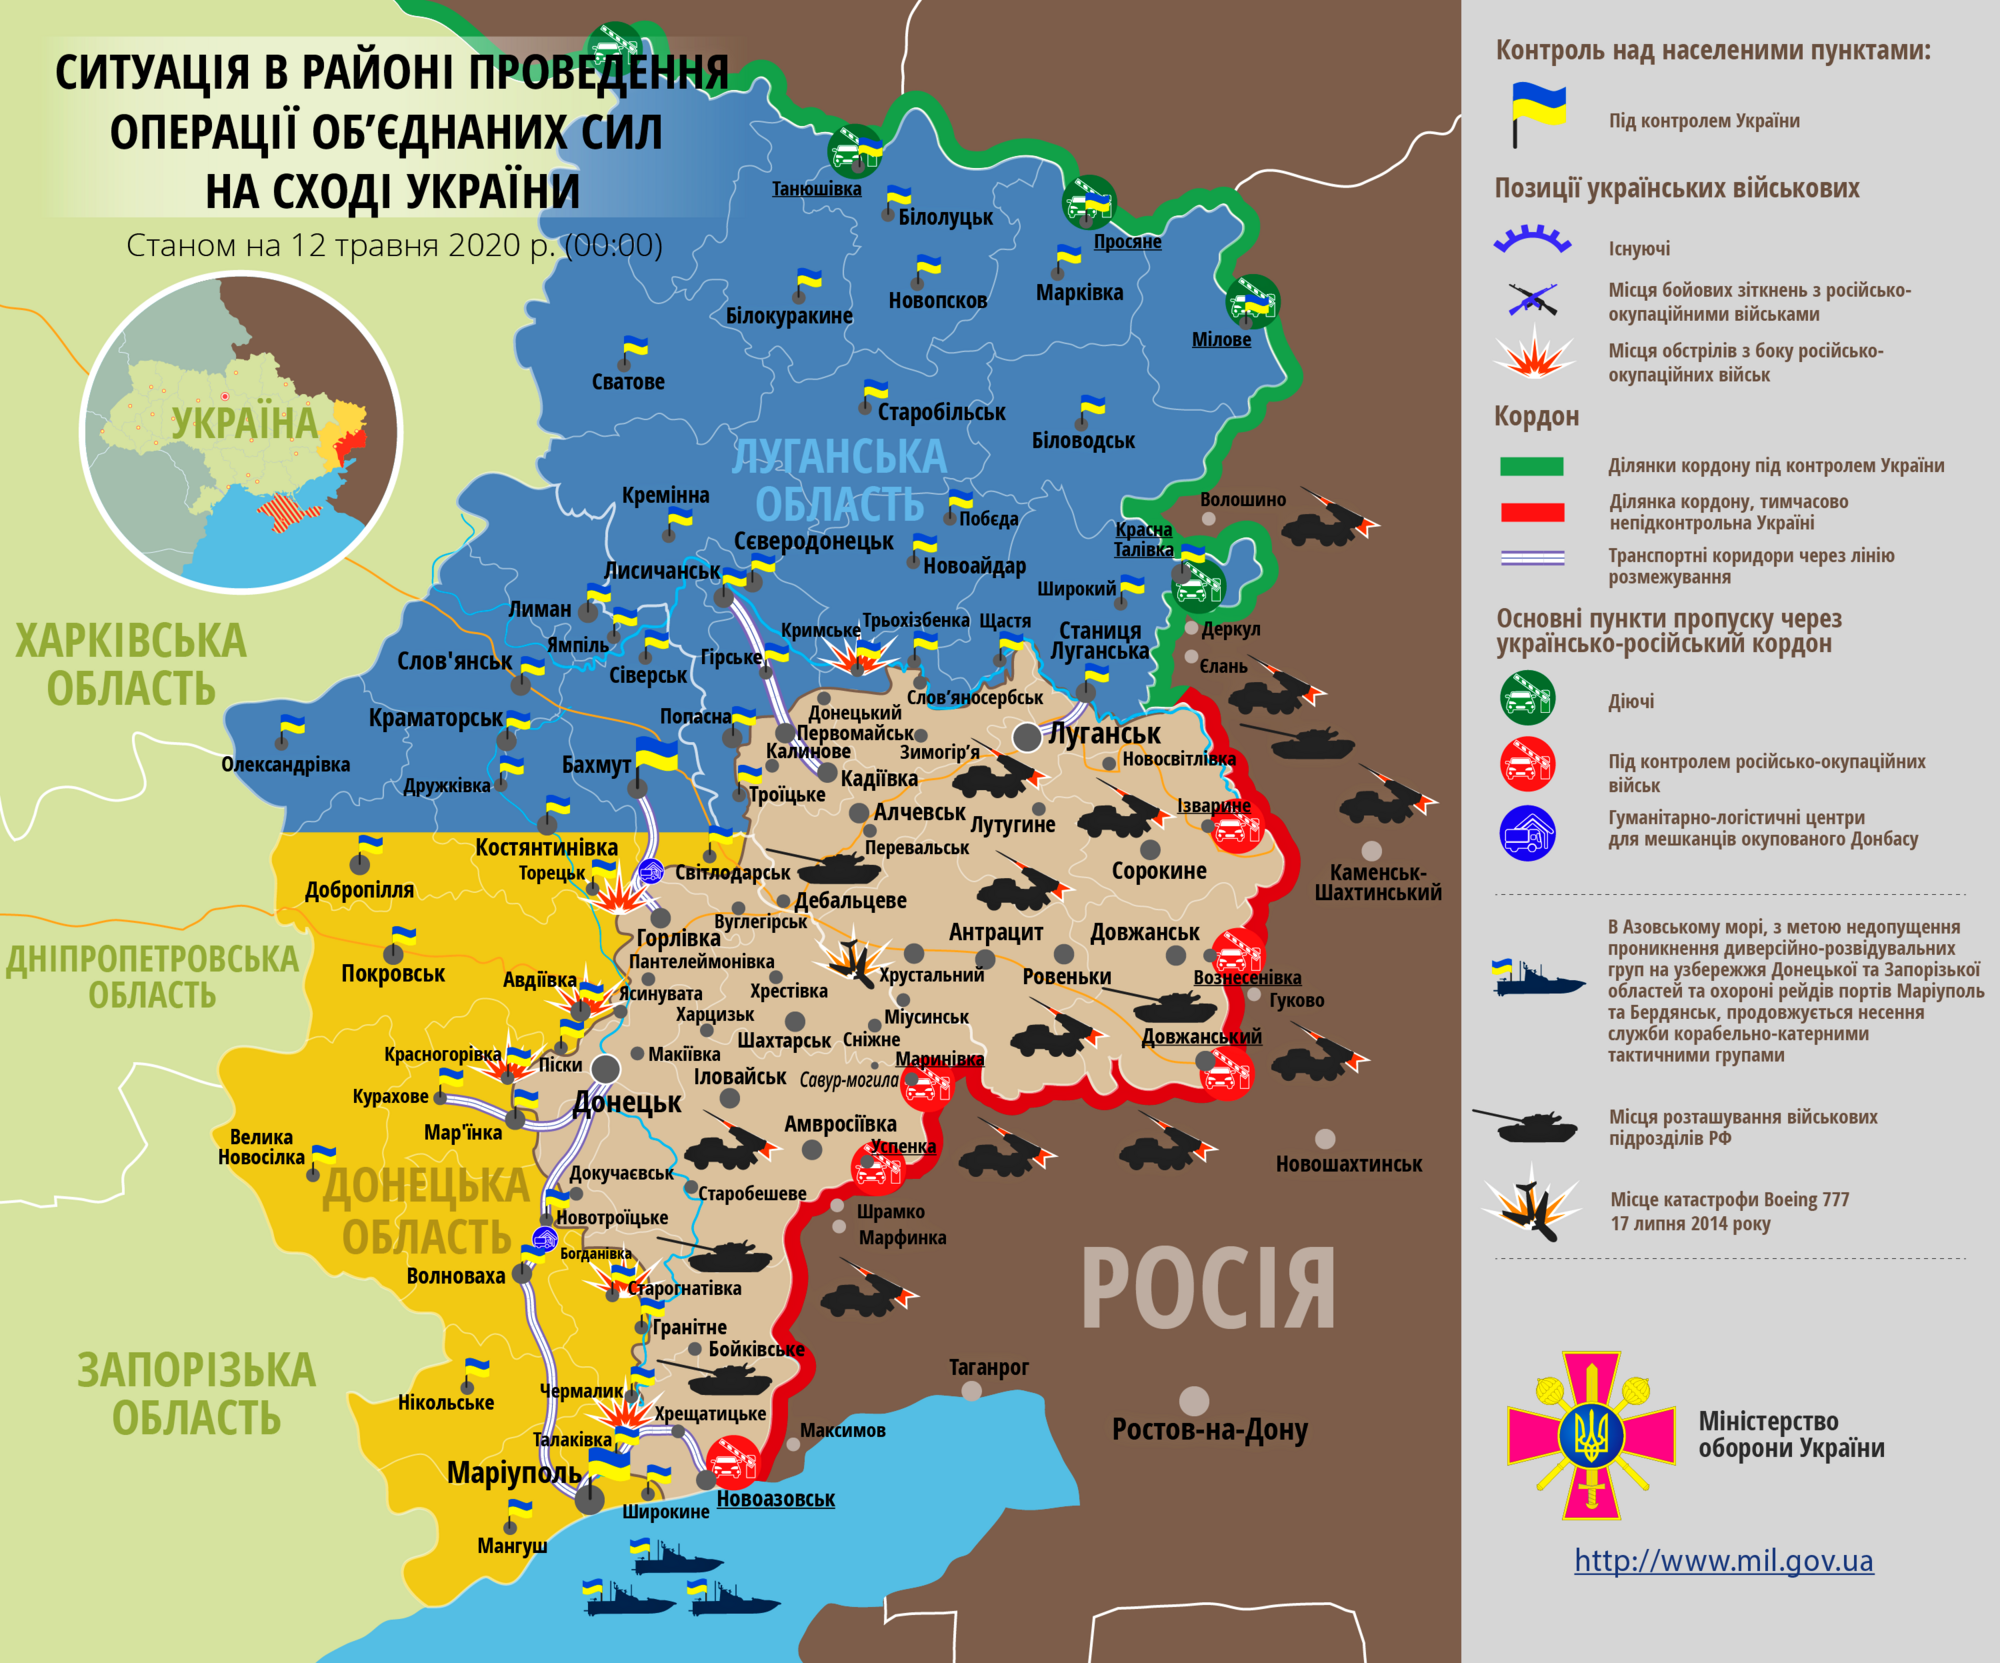 Ситуация в зоне проведения ООС на Донбассе 12 мая